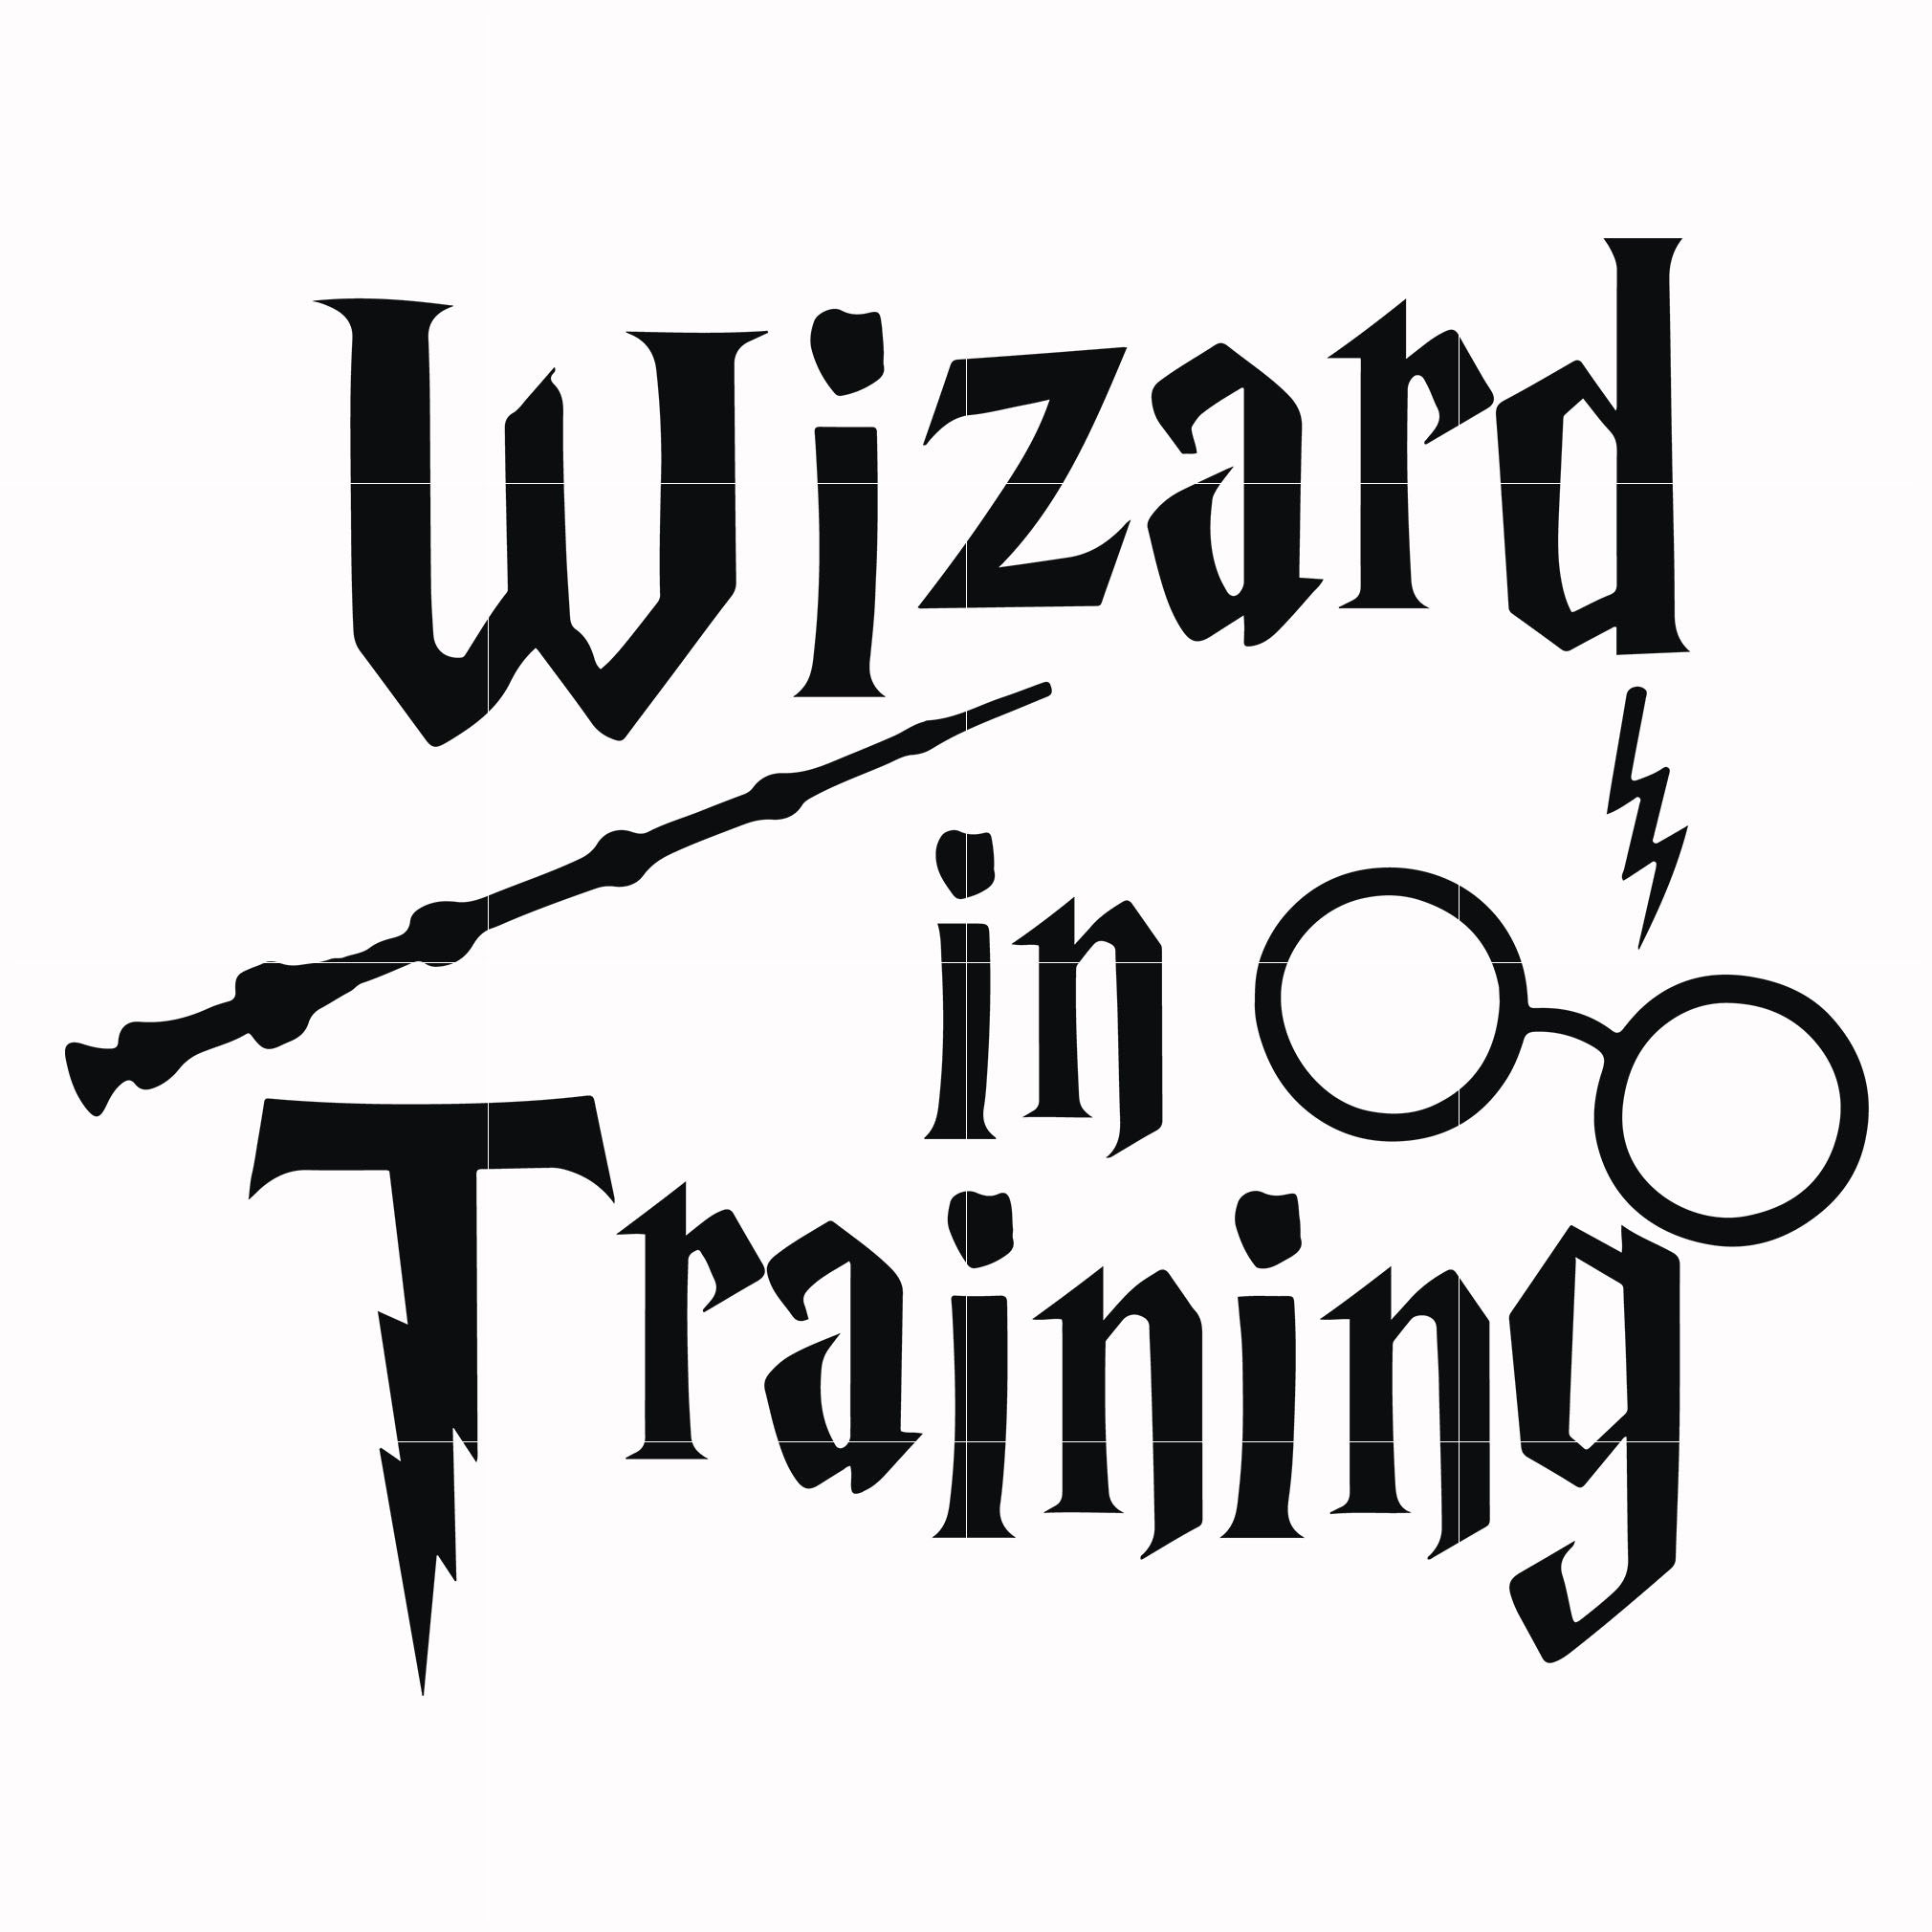 Download Wizard In Training Svg Harry Potter Svg Potter Svg For Cut Svg Dxf Svgtrending SVG, PNG, EPS, DXF File